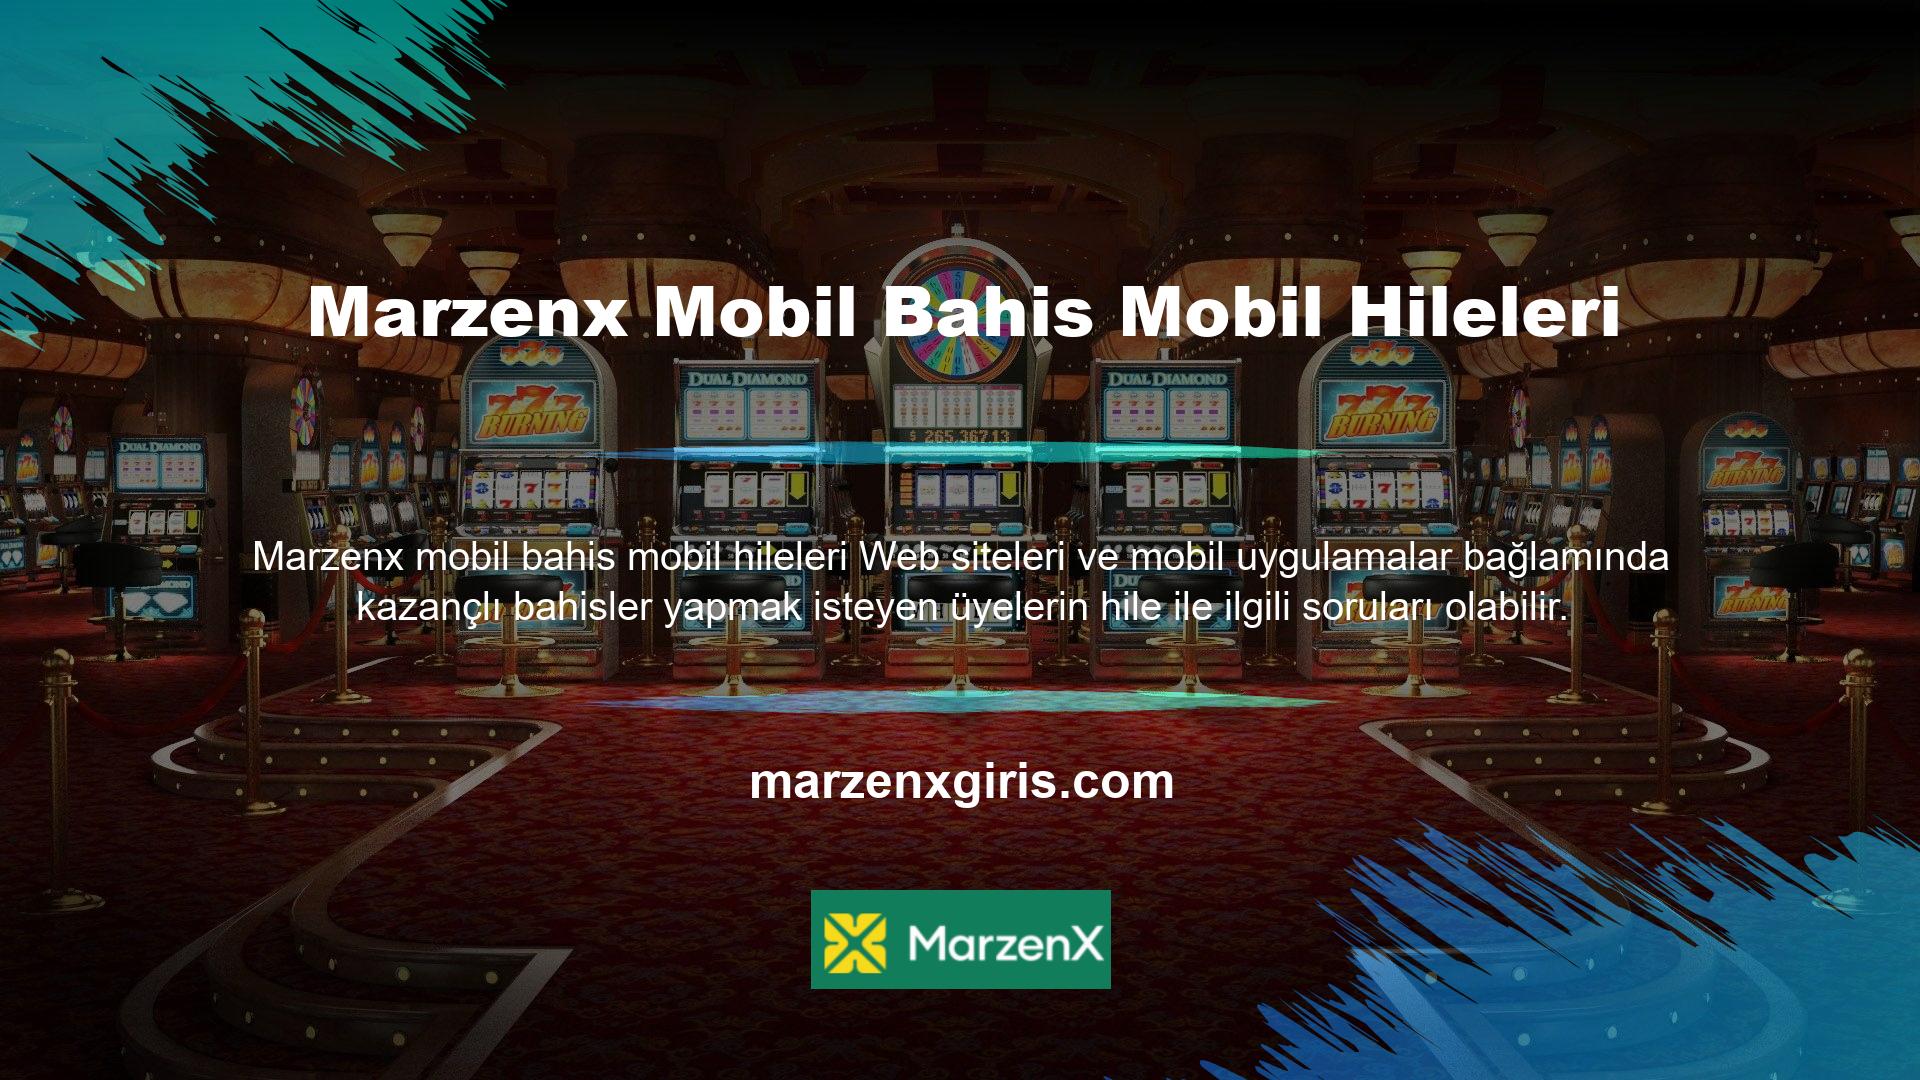 Bu gariplik doğrudan Marzenx mobil girişinin hileli olup olmadığı sorusuna cevap veriyor